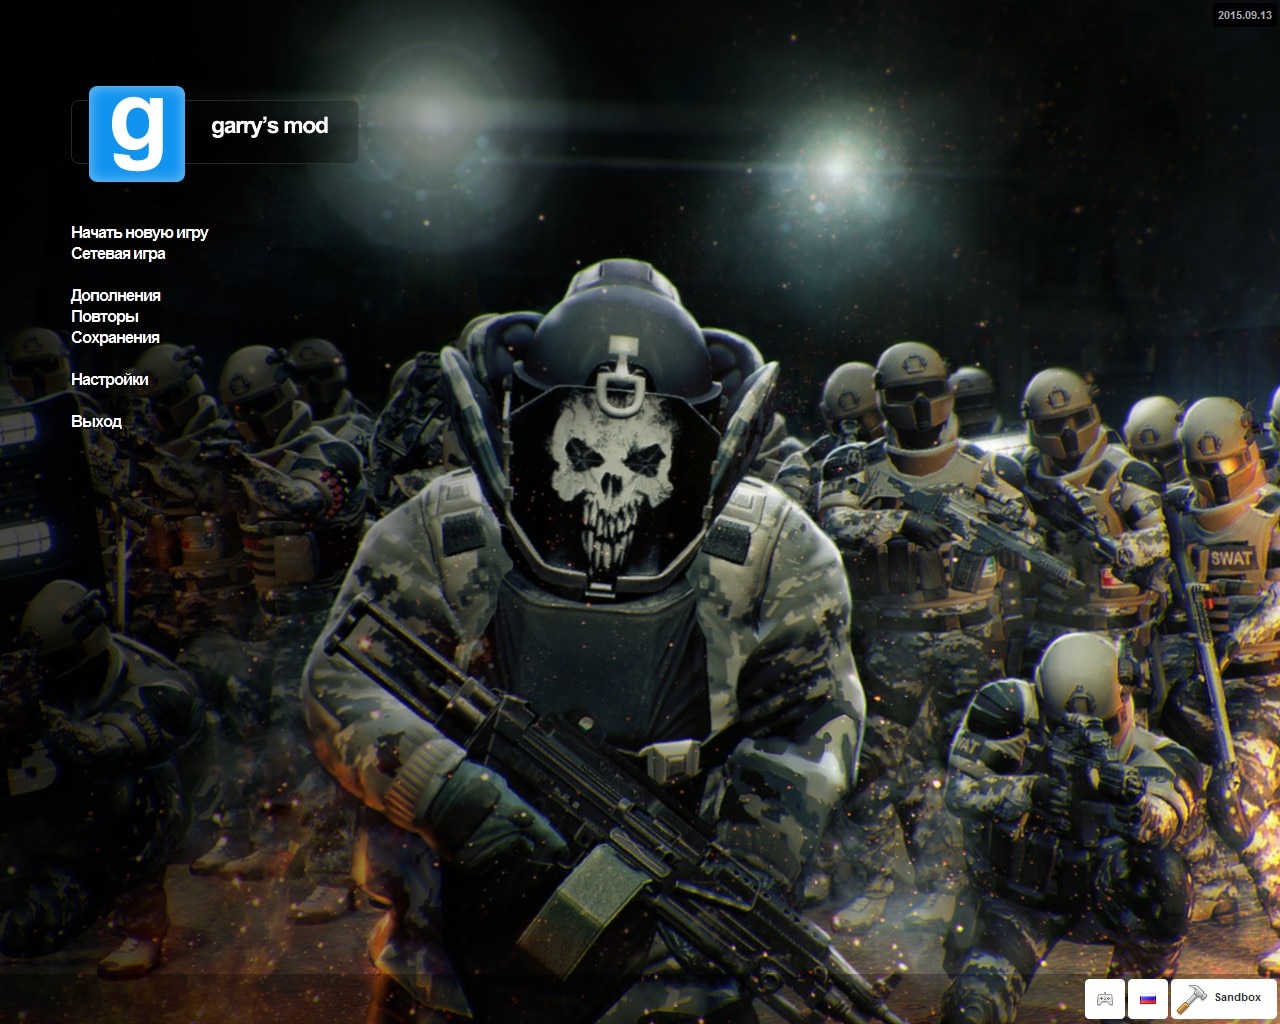 Call of Duty: Modern Warfare 2 Fan Art Recreates Ghost Meme